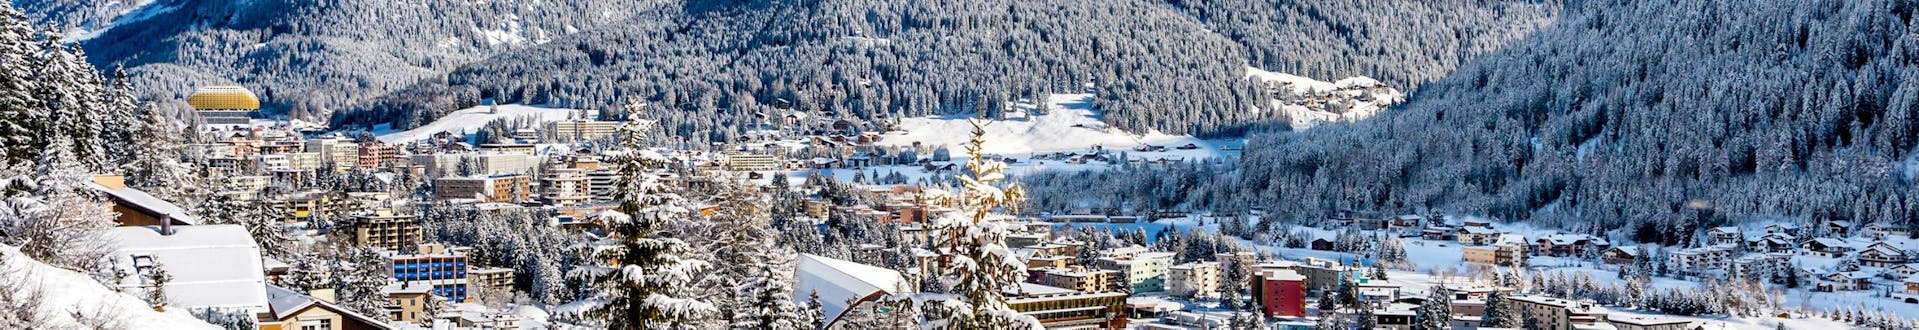 Vue sur la ville suisse de Davos, connue non seulement pour le Forum économique mondial, mais aussi pour ses écoles de ski qui offrent des cours de ski à ceux qui veulent apprendre à skier.